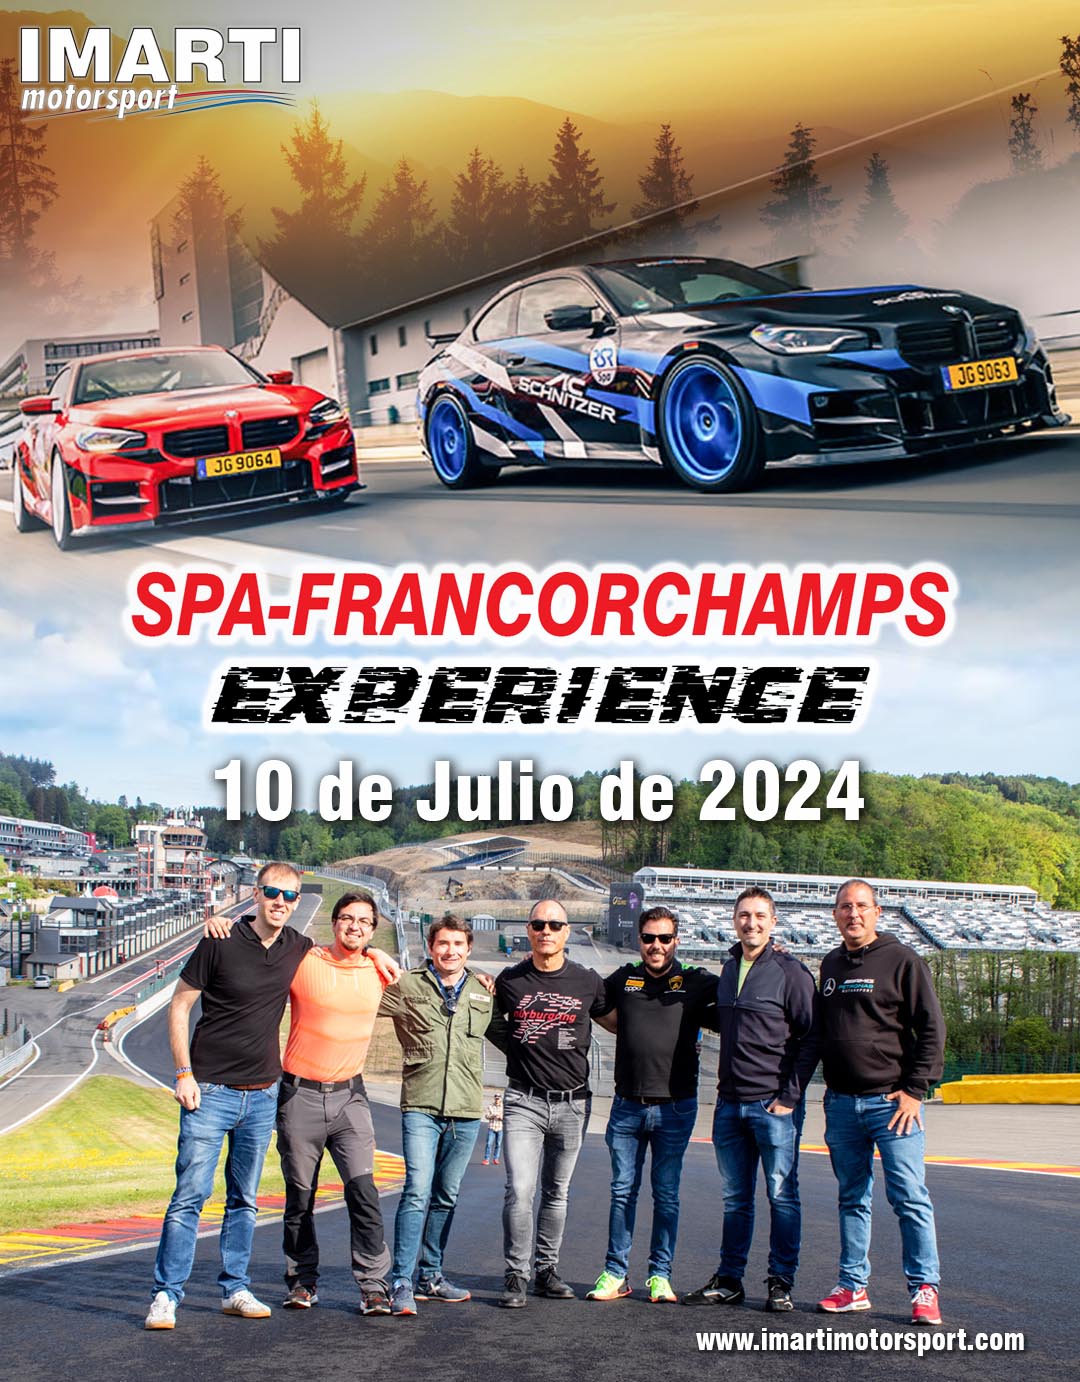 Trackday Premium en el circuito de Spa-Francorchamps